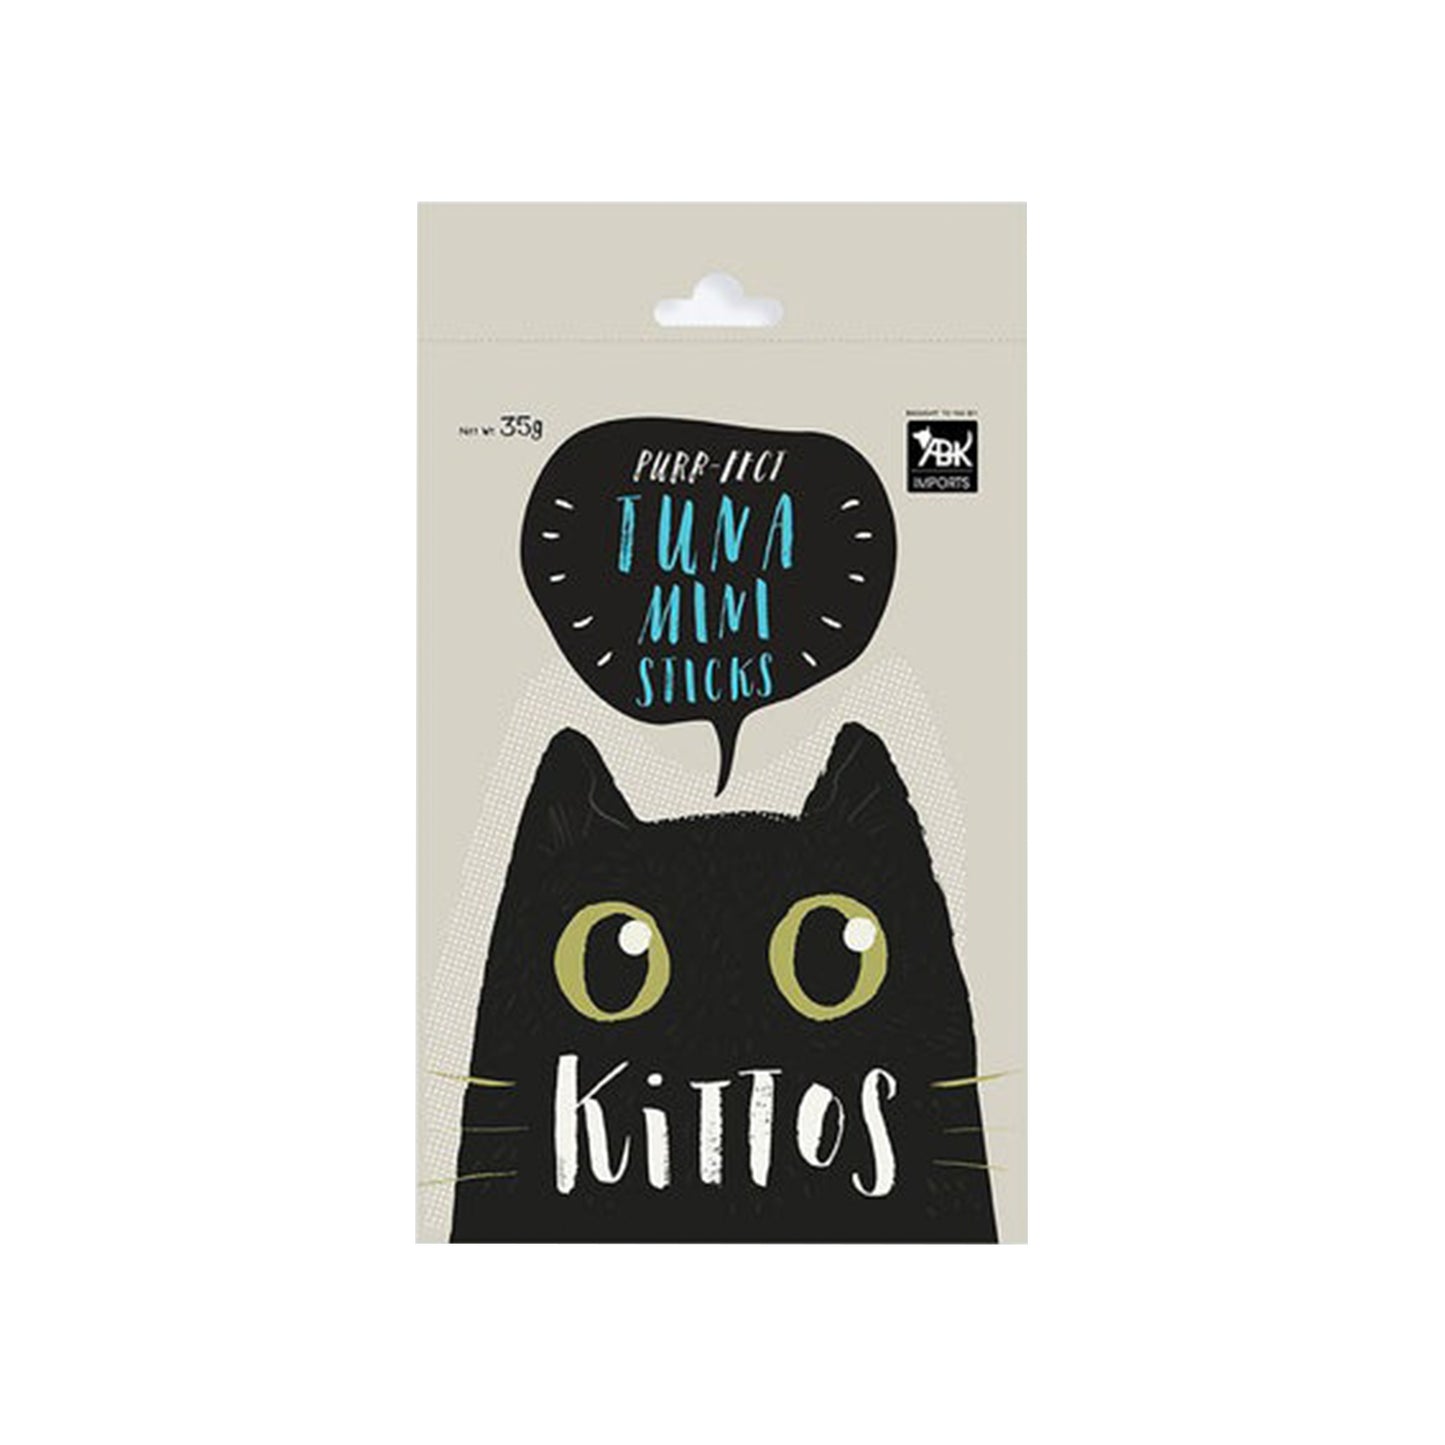 Kittos - Tuna Mini Sticks Cat Treat